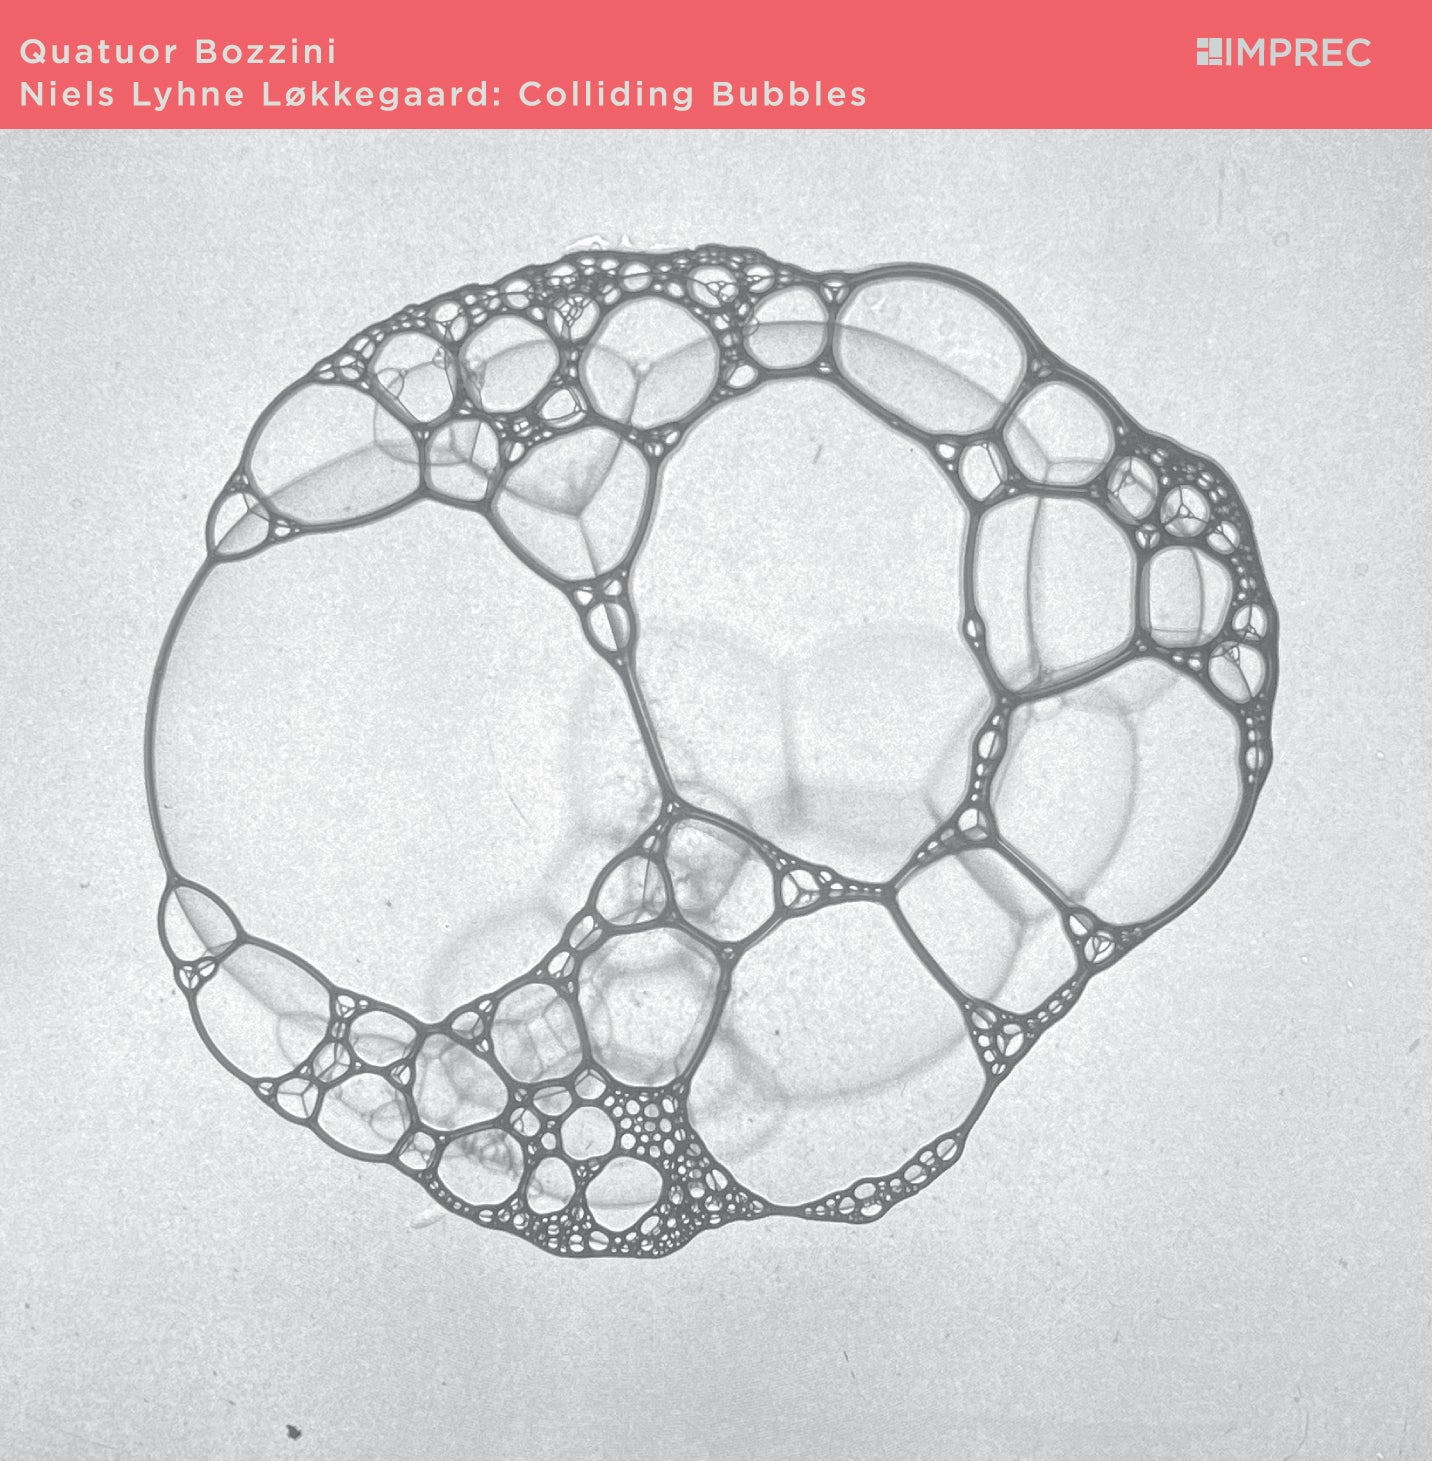 Niels Lyhne Løkkegaard & Quatuor Bozzini - Colliding Bubbles - CD